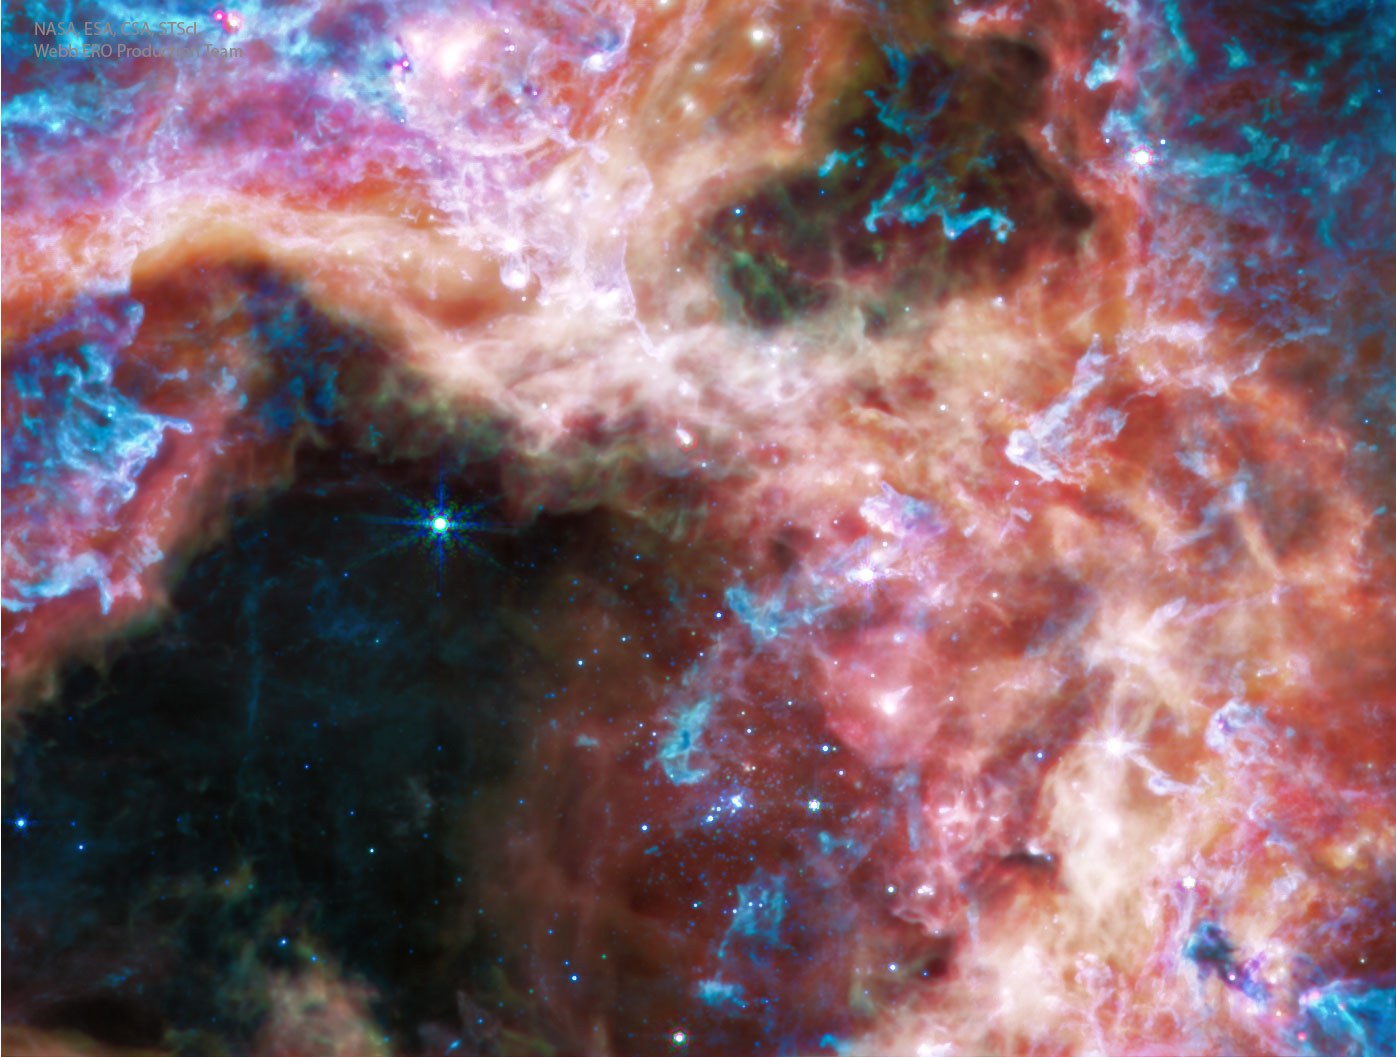 عنقود النجوم ر136 بالضوء تحت الأحمر المتوسّط كما التقطه تلسكوب جيمس وِبّ الفضائي.